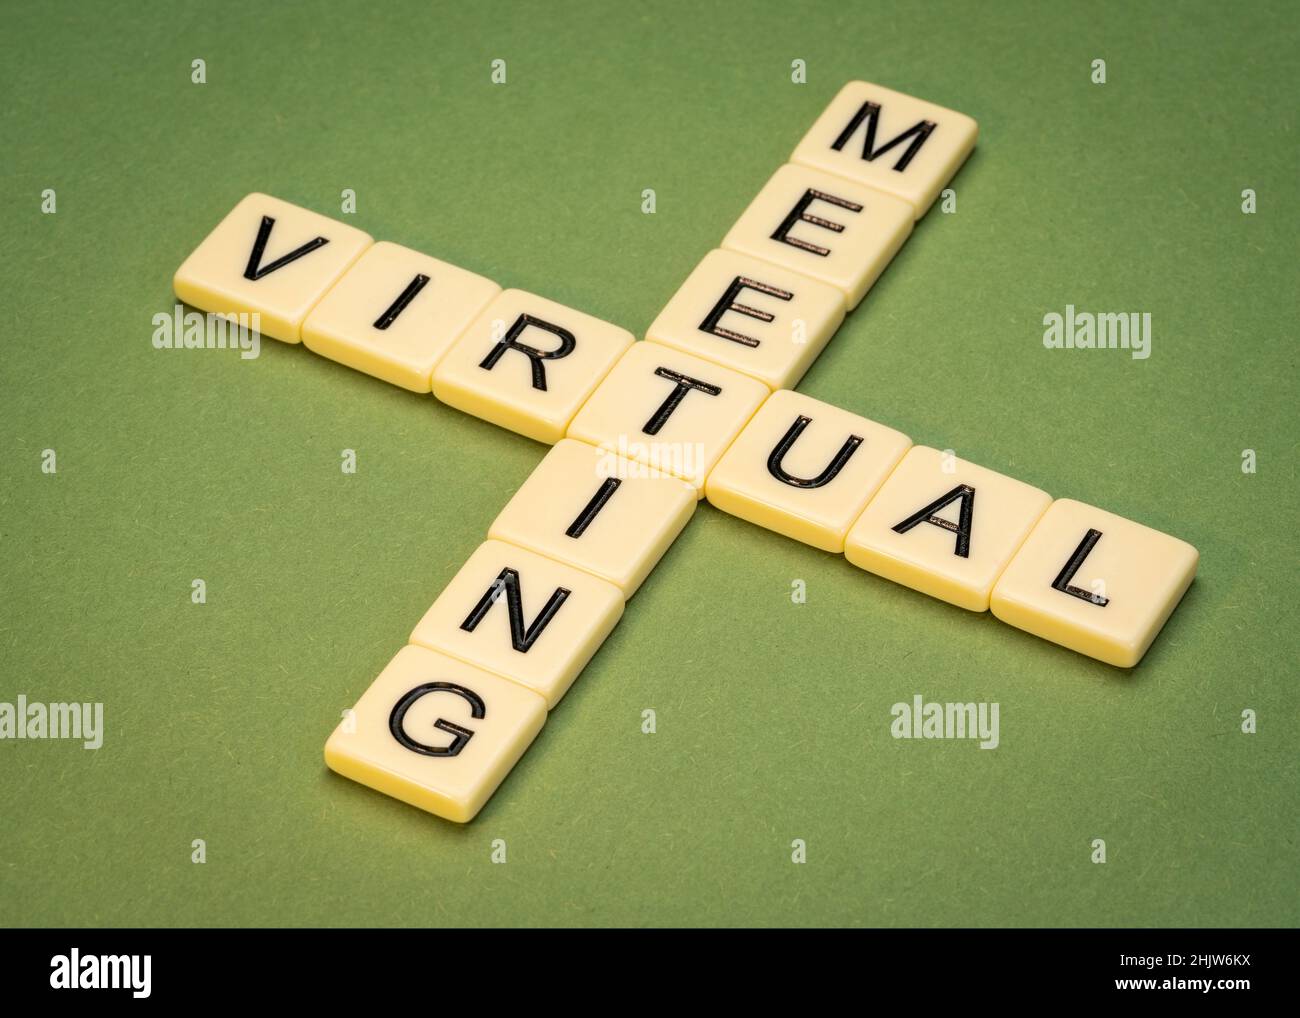 Virtuelles Meeting Kreuzworträtsel in elfenbeinfarbenen Buchstabenkacheln gegen strukturiertes handgefertigtes Papier, Netzwerk- und Telekommunikationskonzept Stockfoto